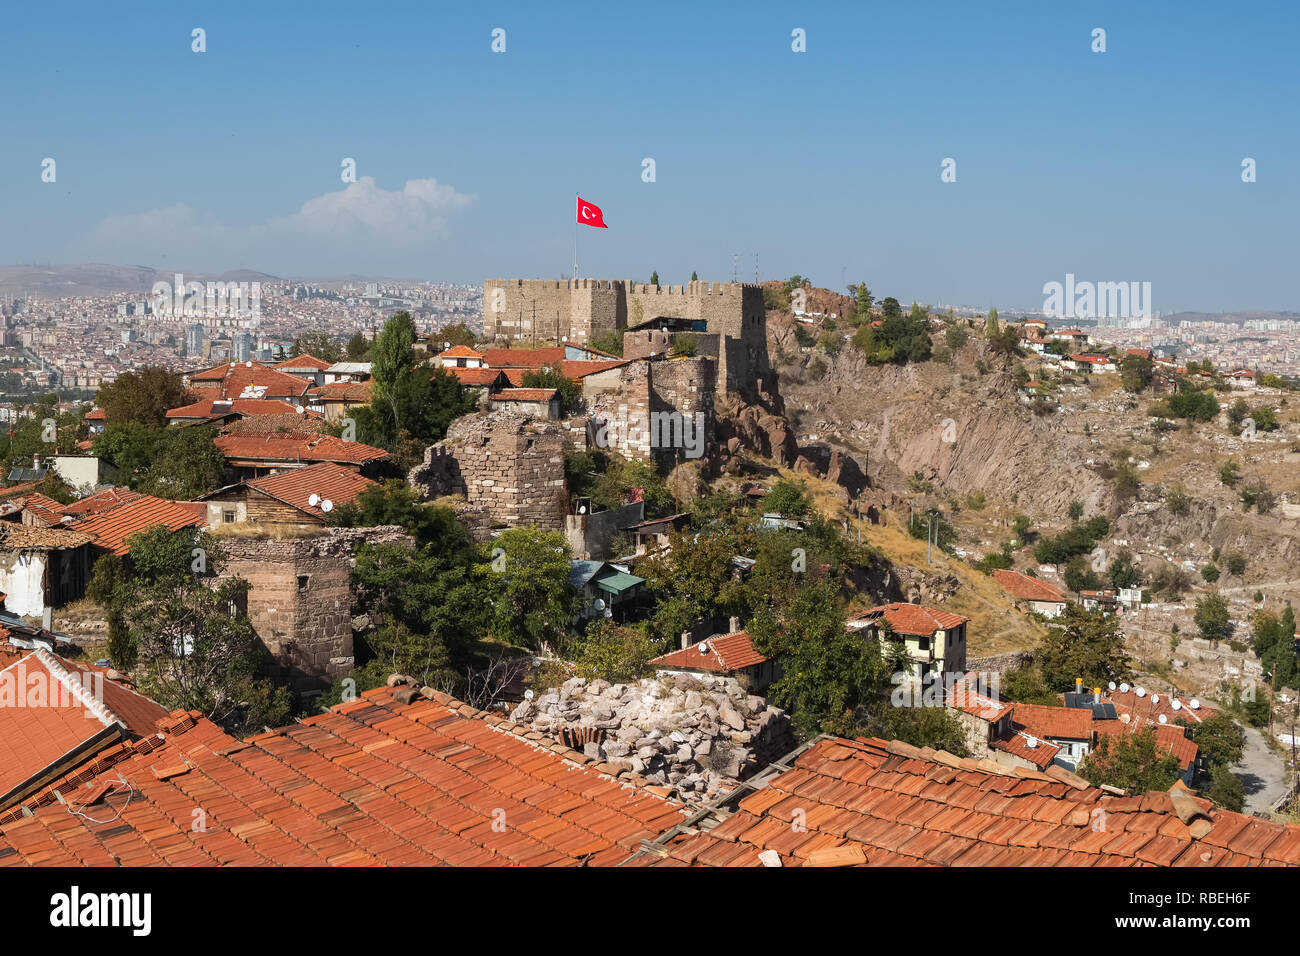 Famous Ankara castle at sunny day in capital of Turkey Stock Photo